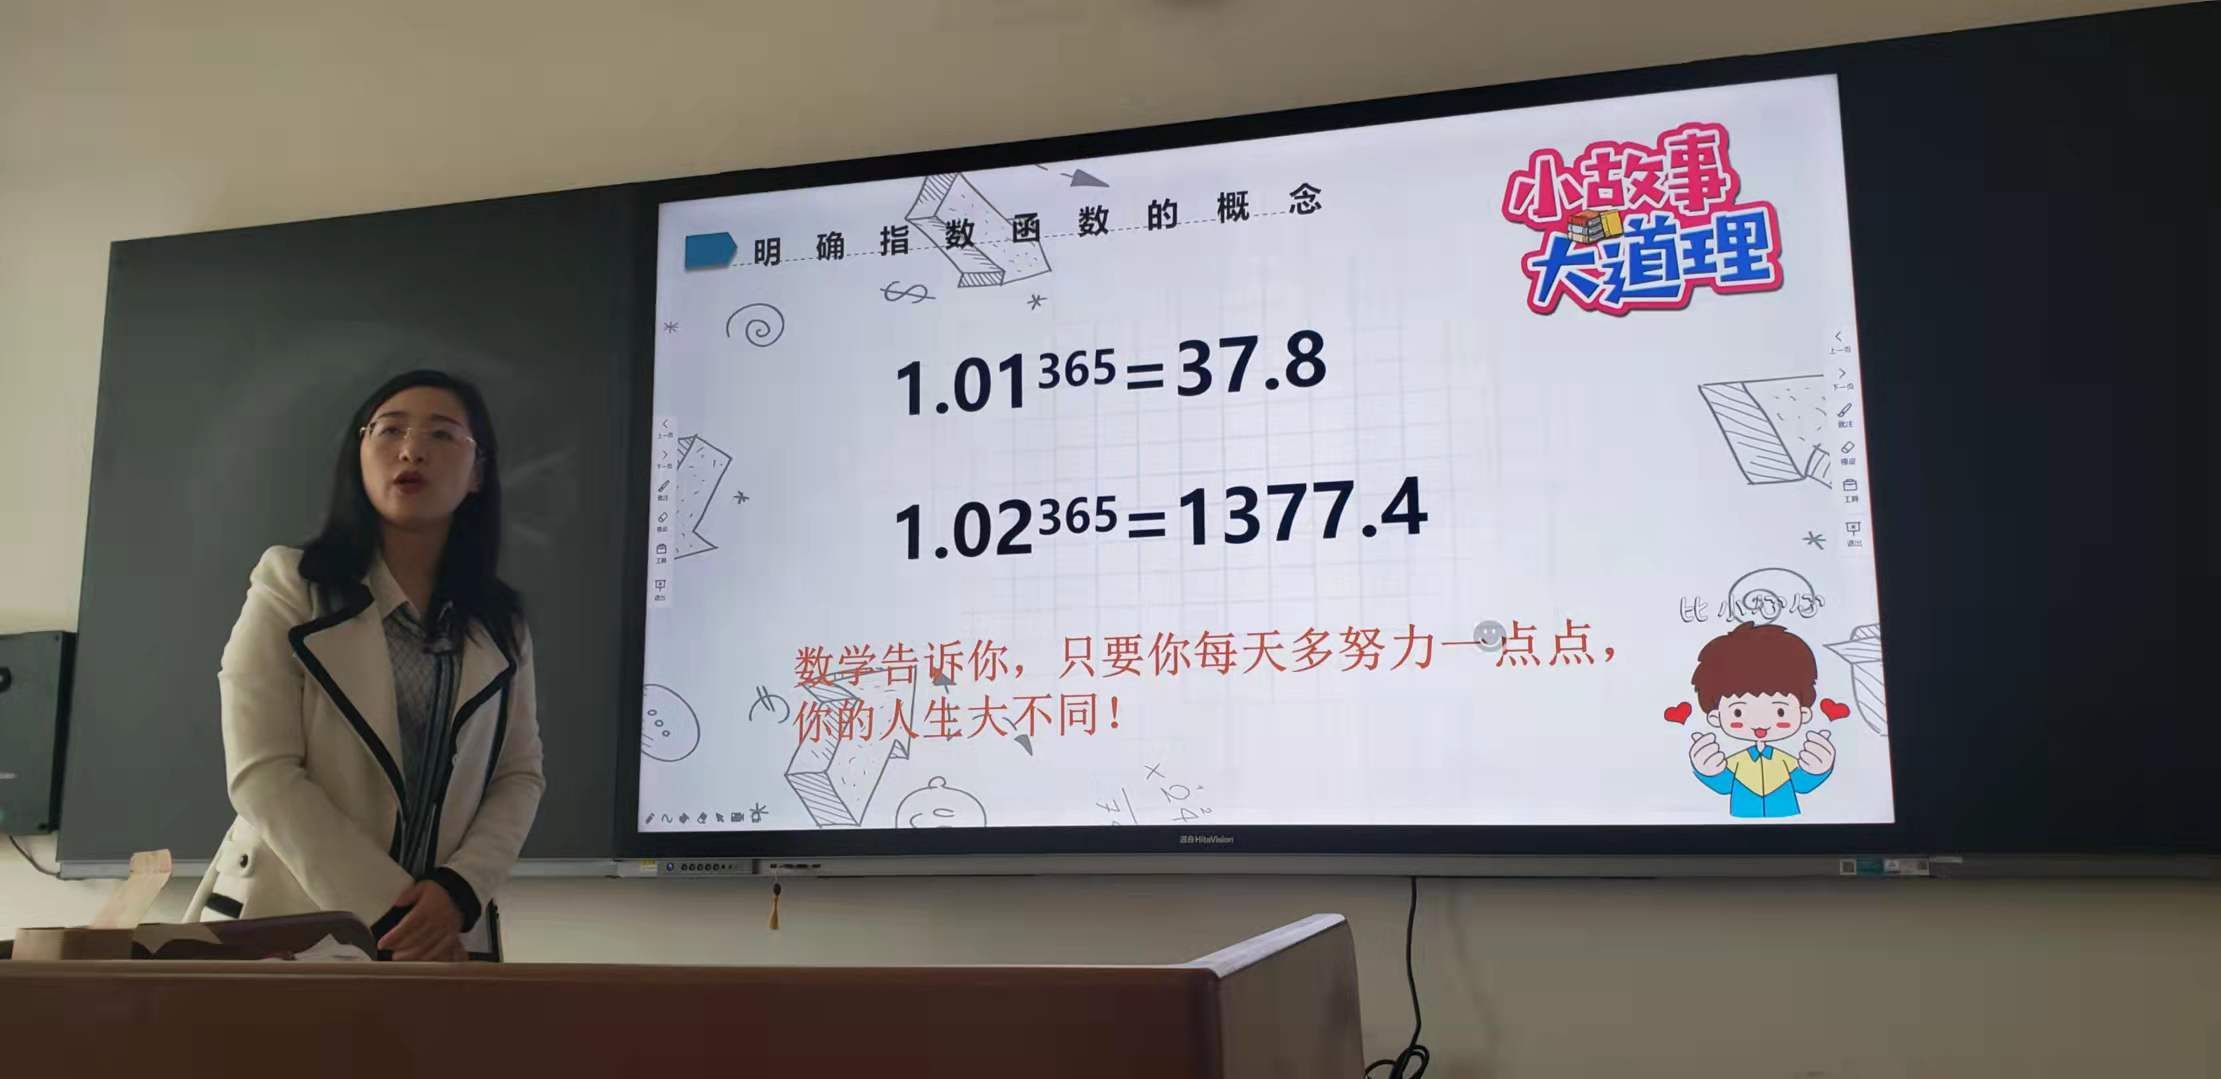 熱烈慶祝我院基礎部吳瓊、孫小琳、王詩淇三位老師 在遼寧省信息化教學大賽上獲得佳績